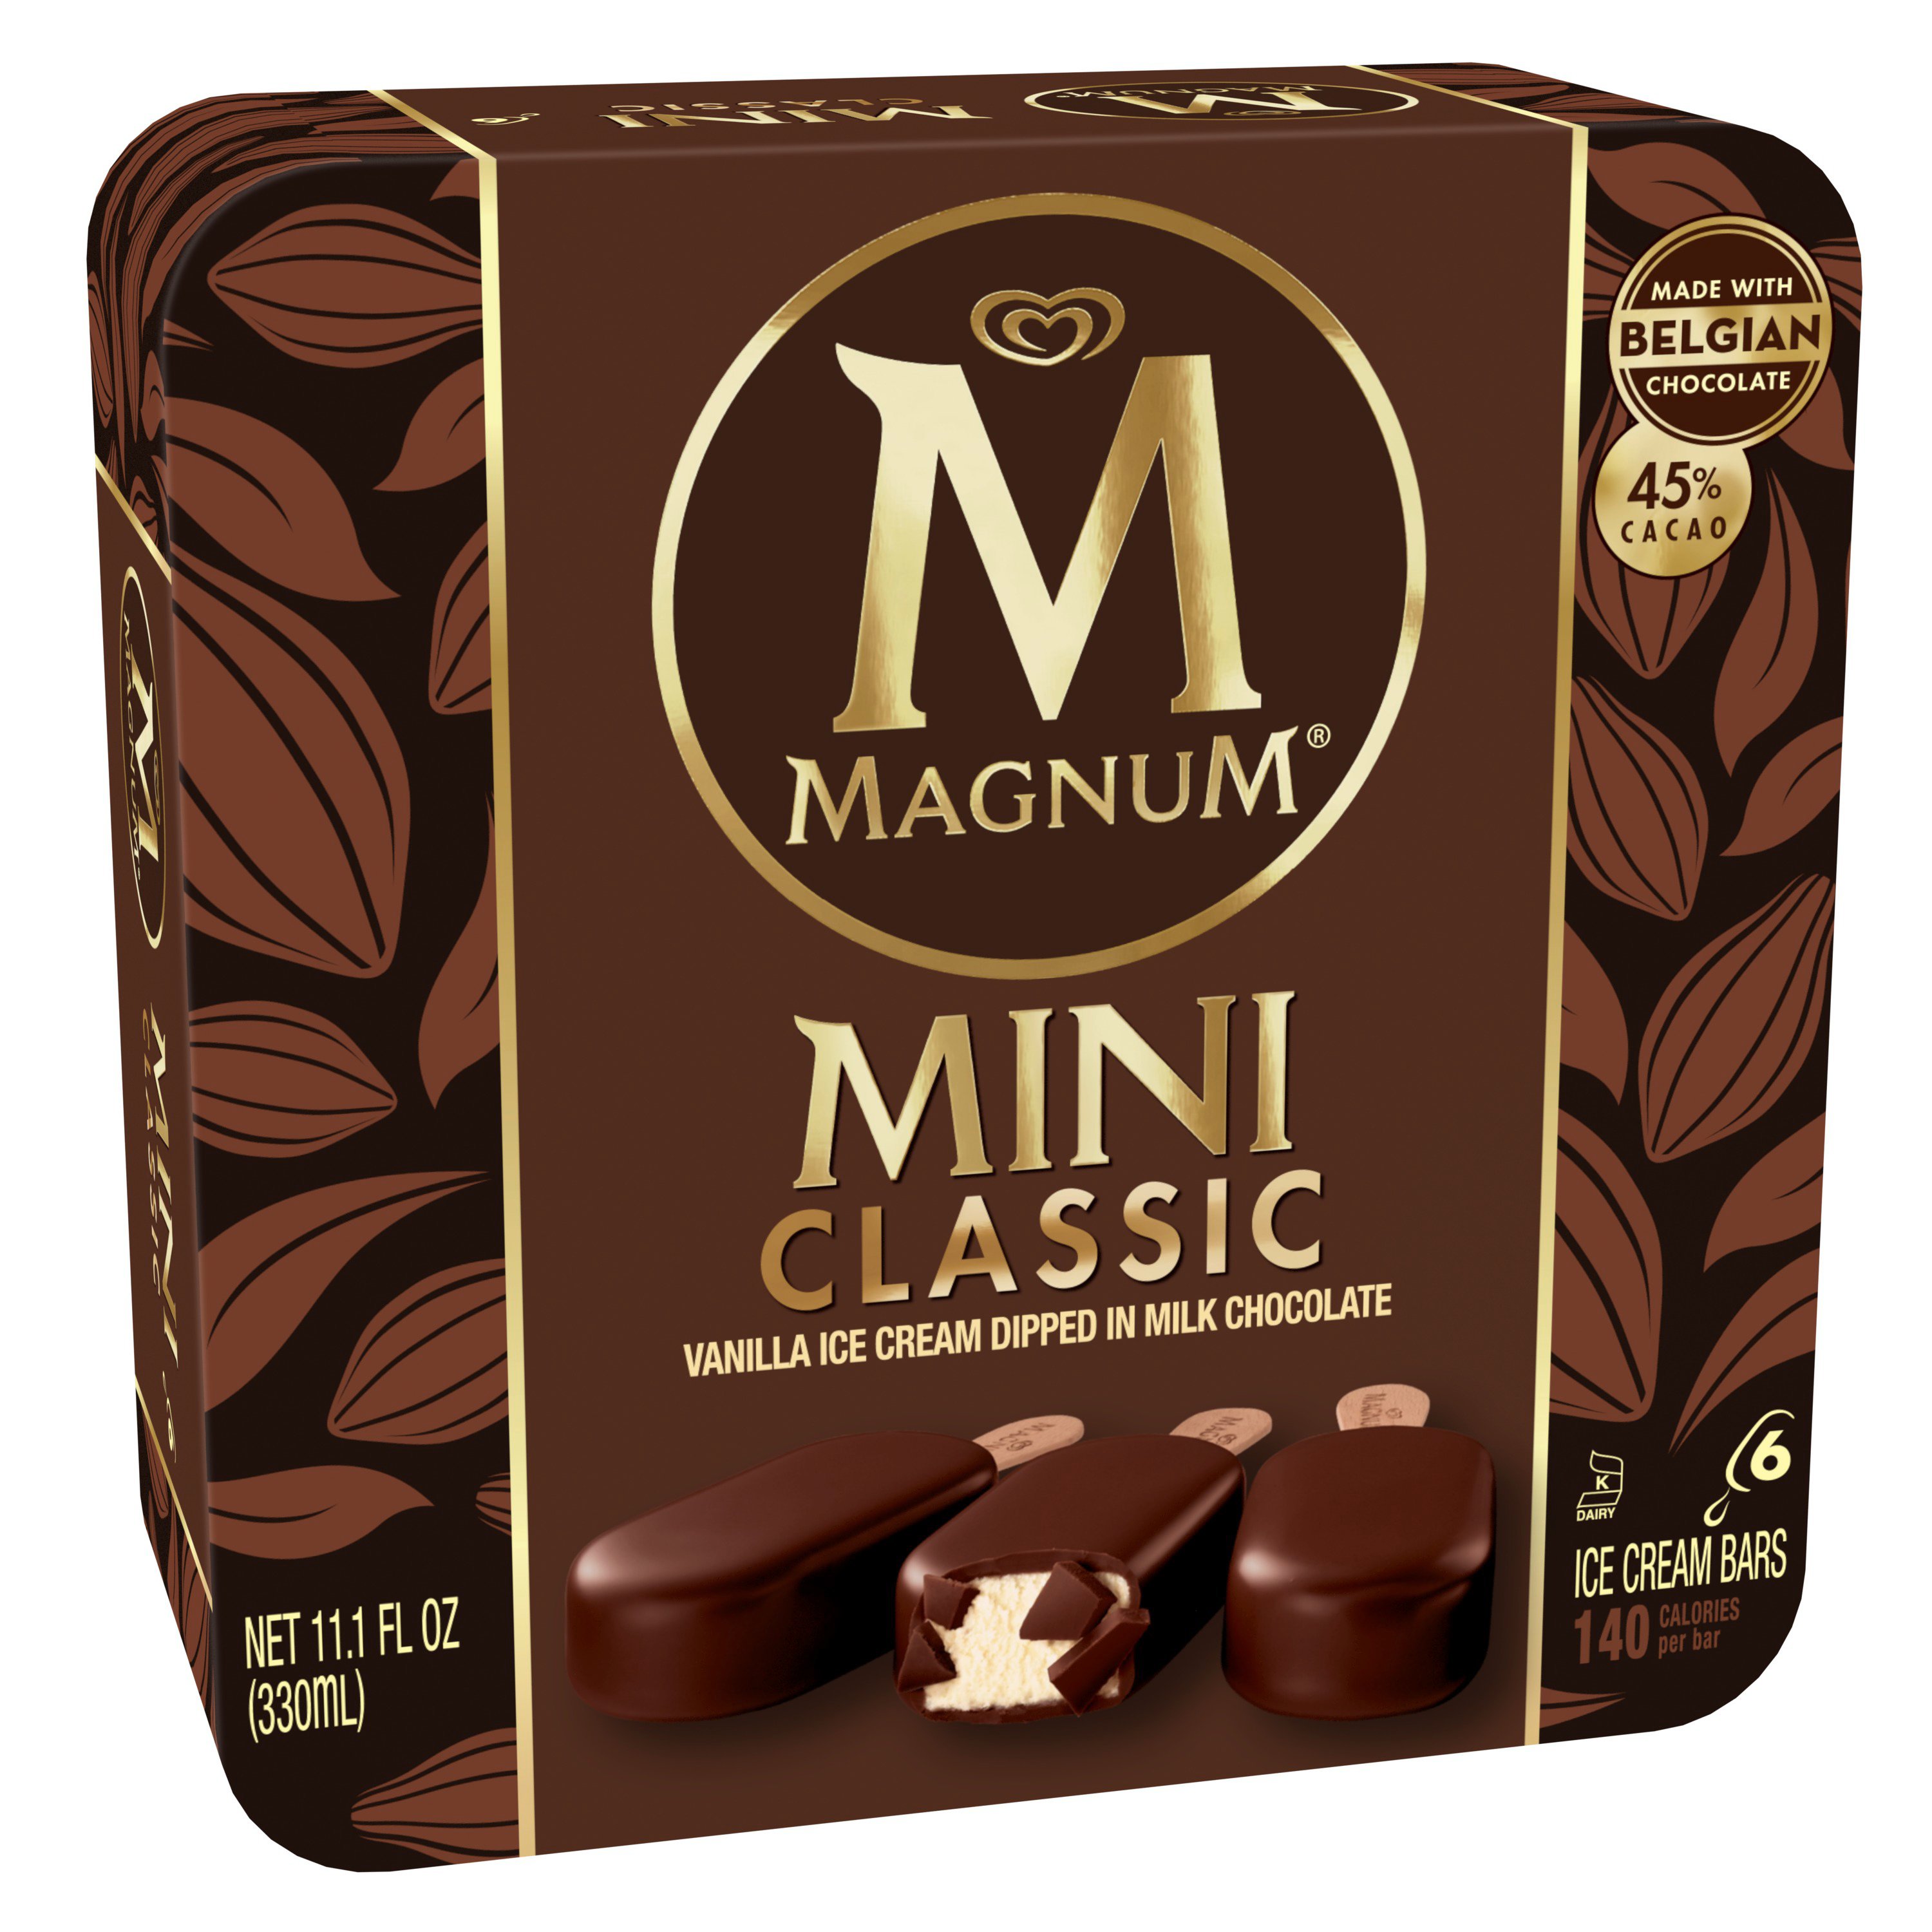 Magnum Mini Classic Ice Cream Bars - Shop Ice Cream at H-E-B